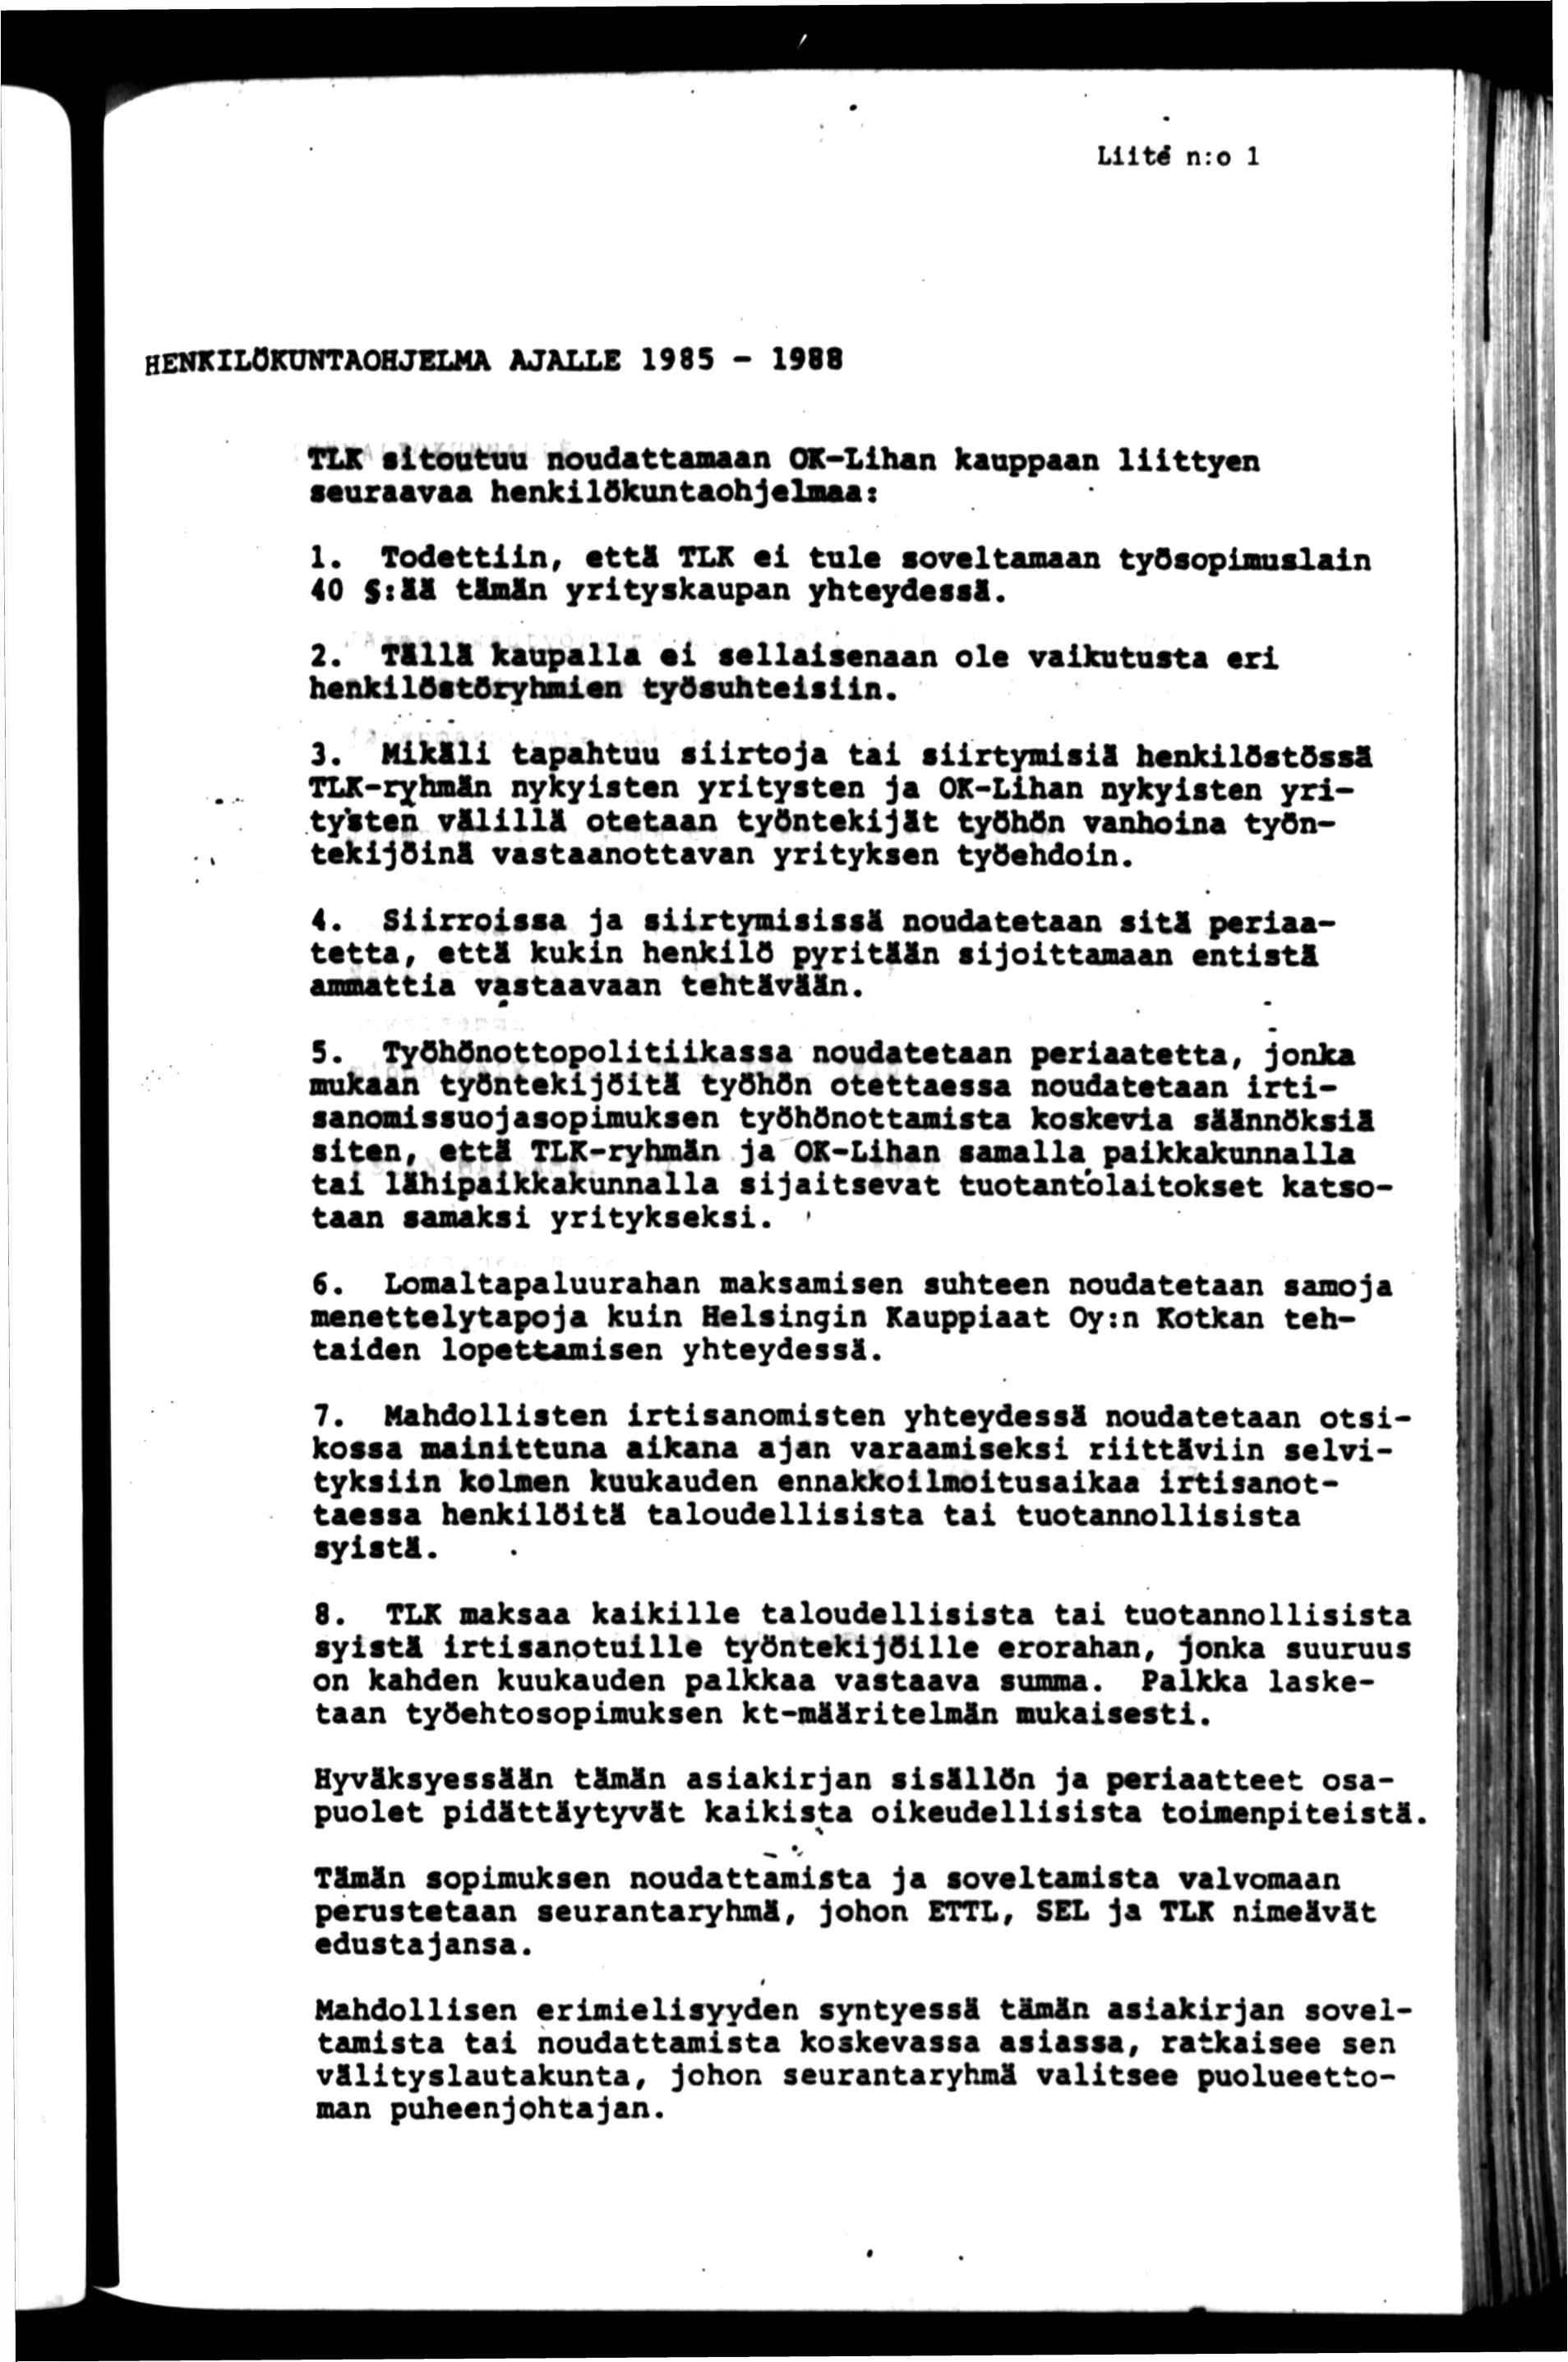 Lllt^ n:o 1 HENKLOKUNTAOHJELMA AJALLE 1985-1988 TLK stottttu noudattamaan OK-Lhan kaappaan llttyan auraavaa henkllokuntaohjalnaas 1.